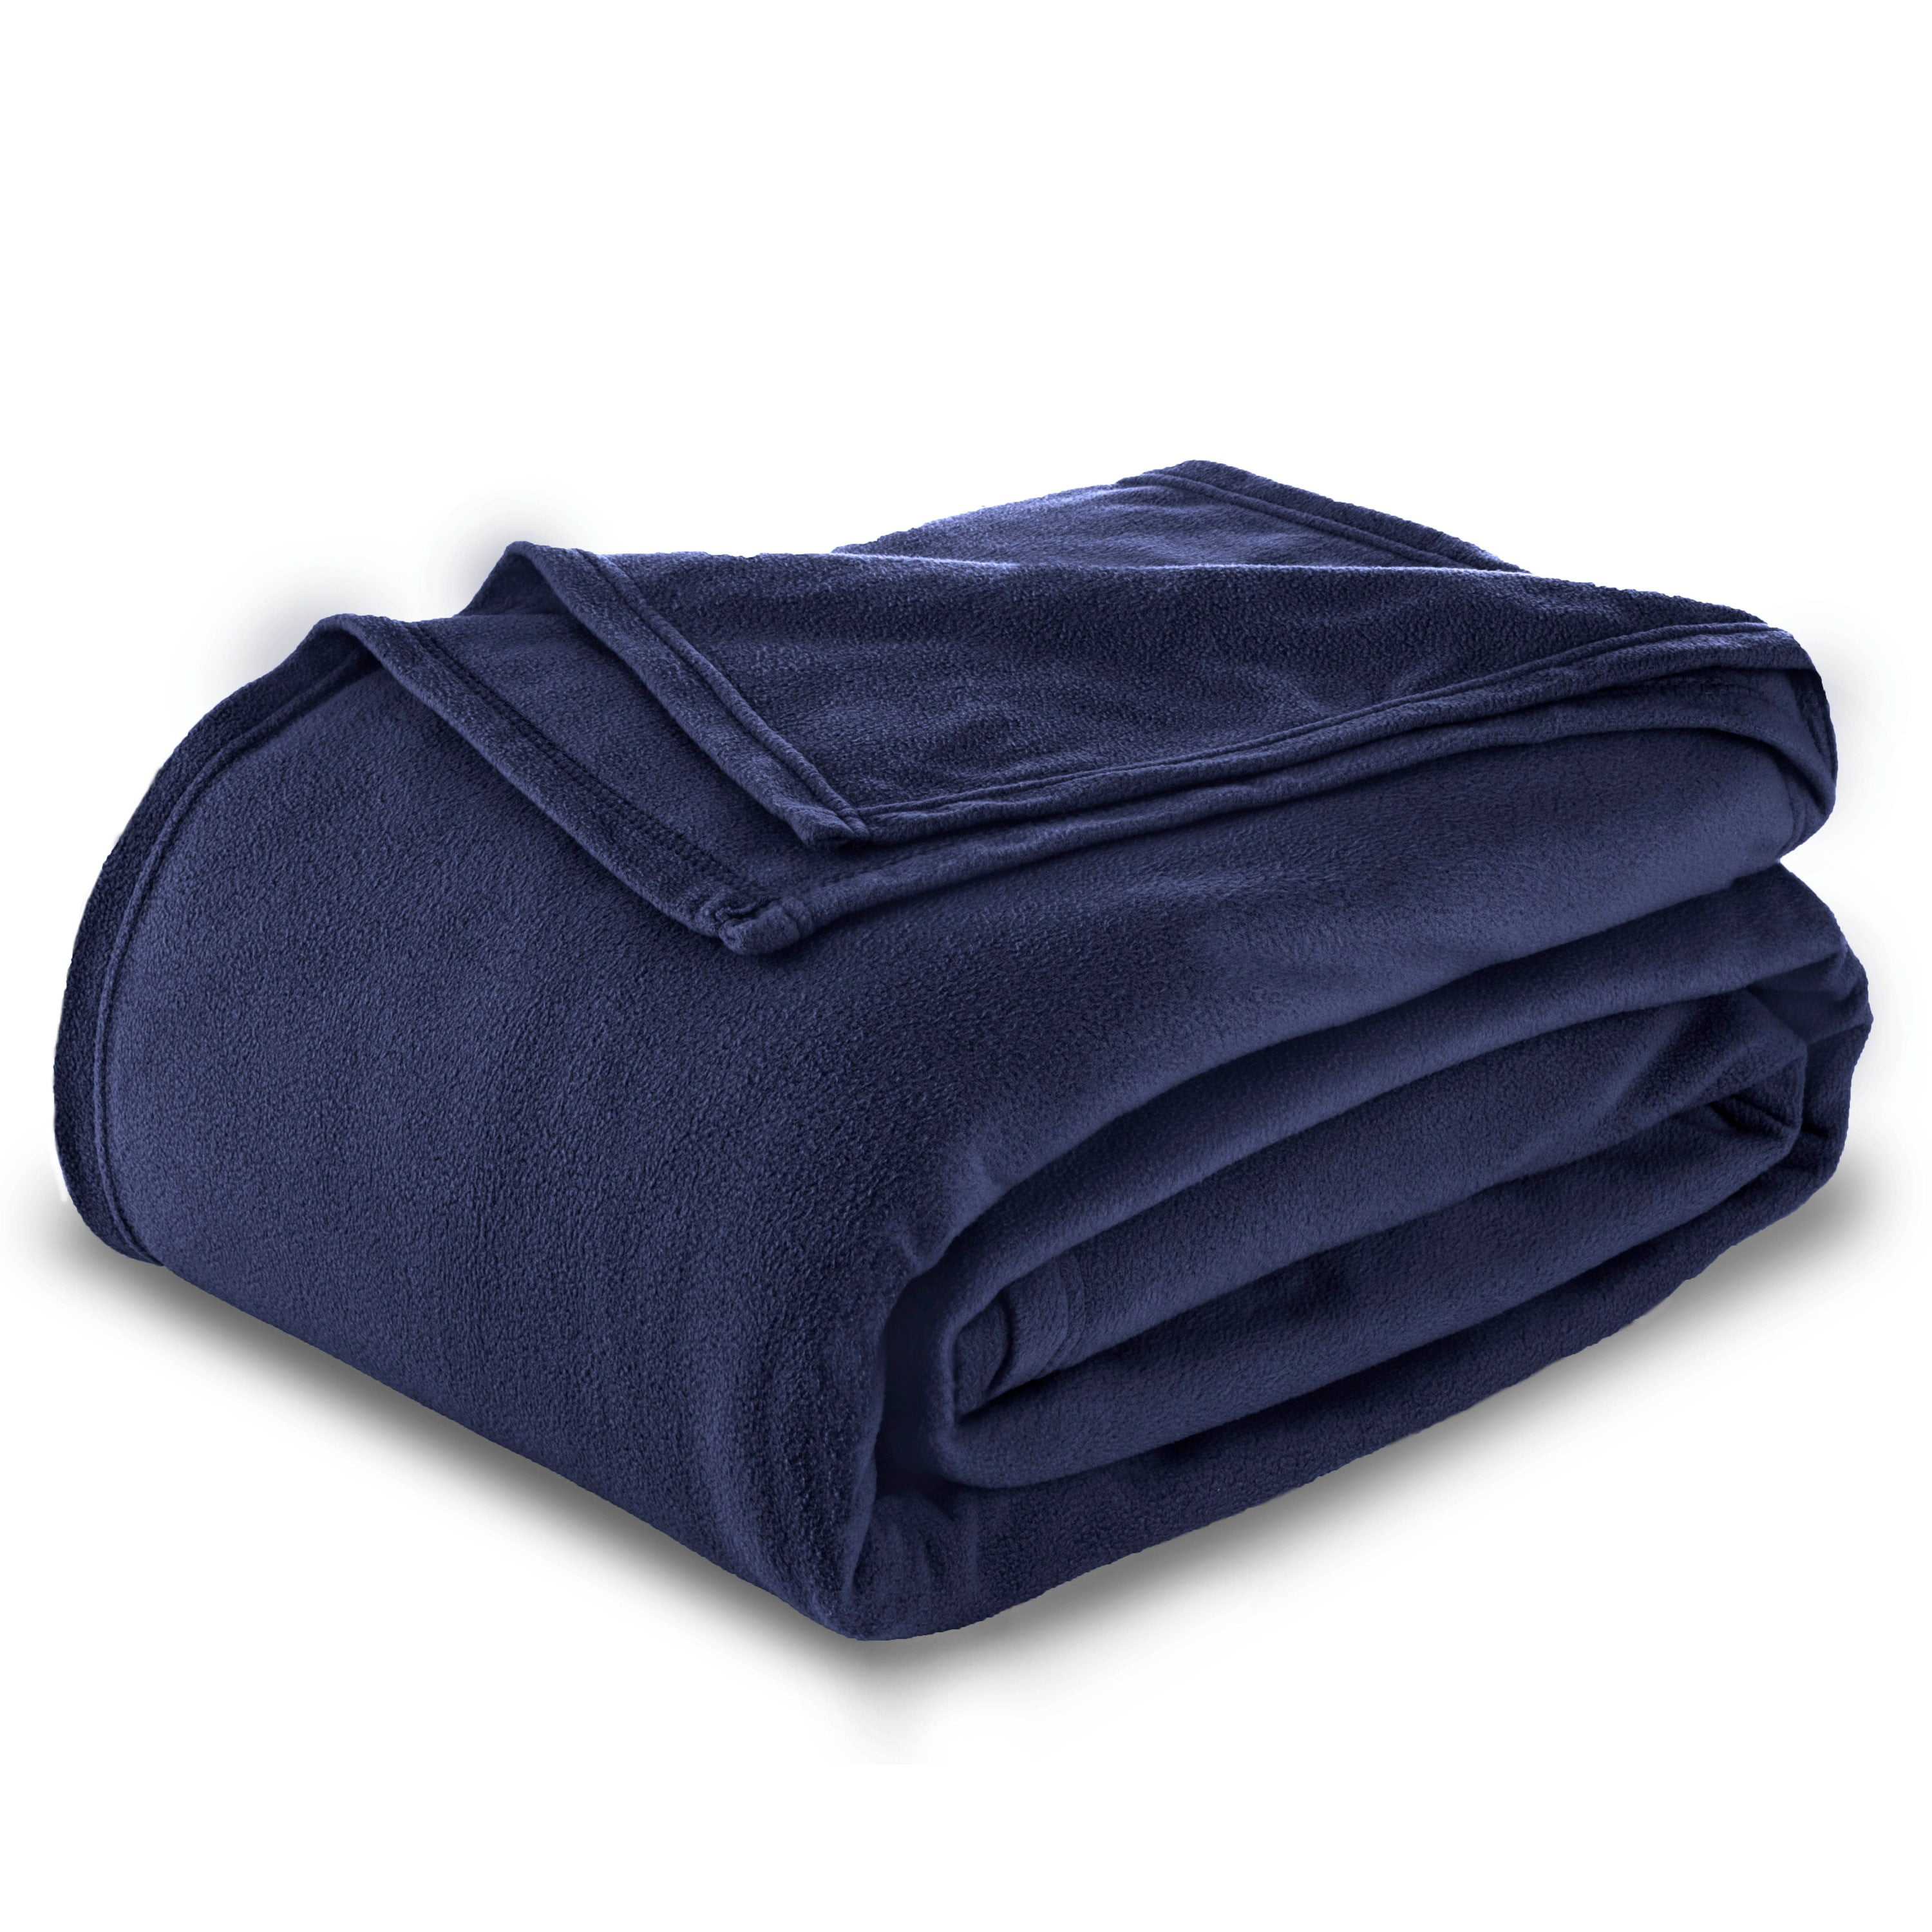 Vellux Fleece Blanket Queen Size Bed Blanket - All Season Warm ...